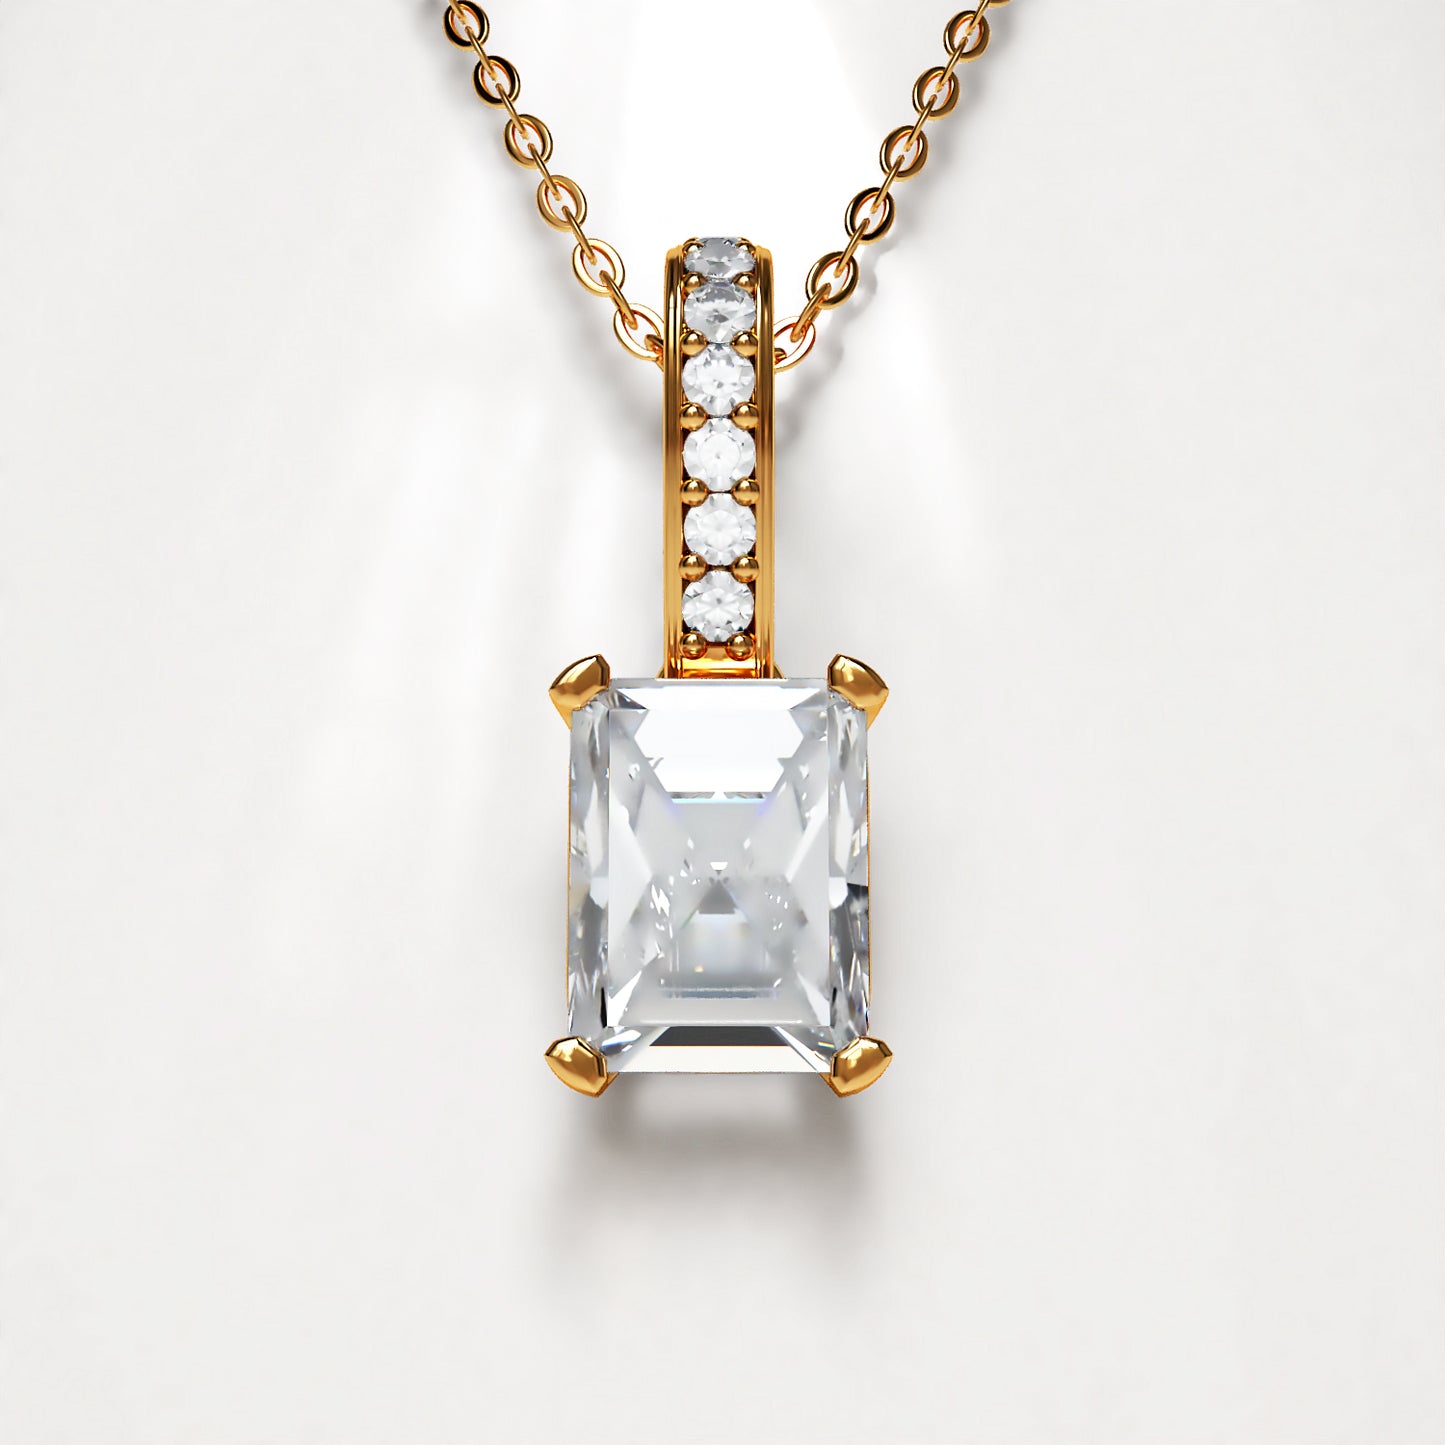 Prime: Platinum Emerald Cut Diamond Pendant